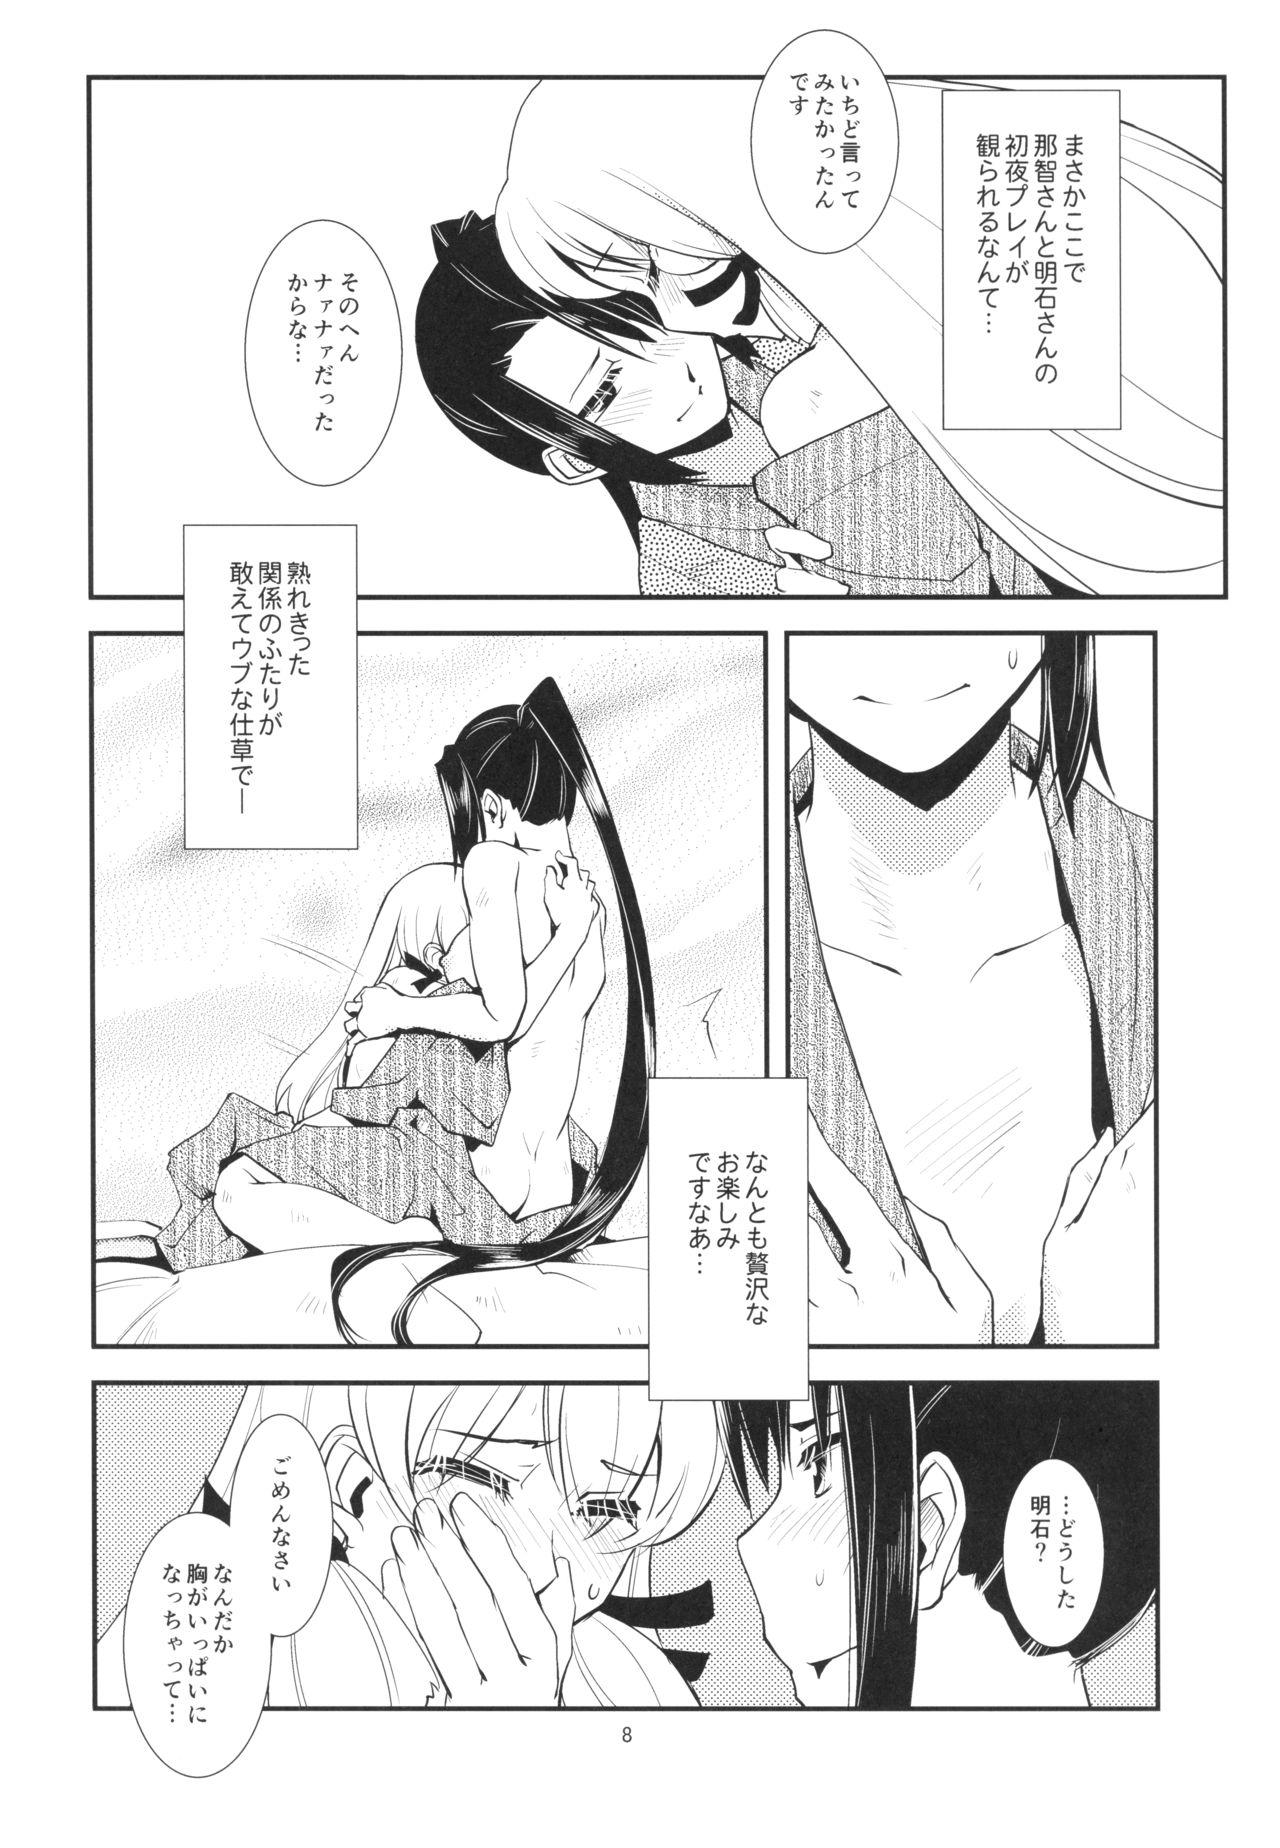 Blows 青葉のどっきりマル秘報告 - Kantai collection Gay 3some - Page 10